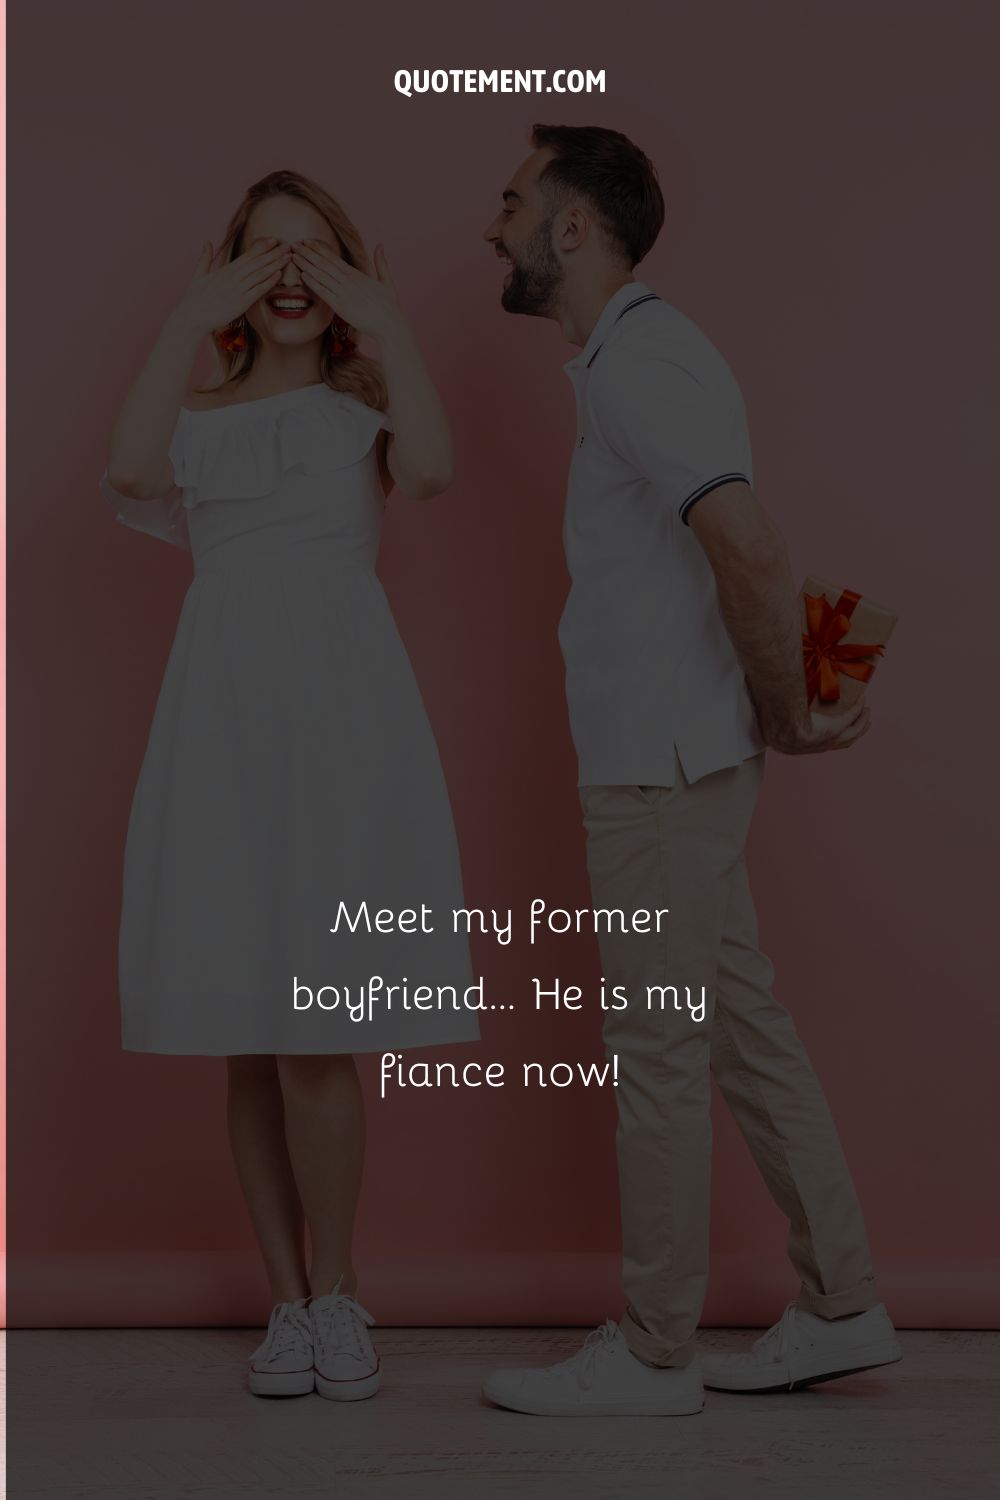 Meet my former boyfriend… He is my fiance now